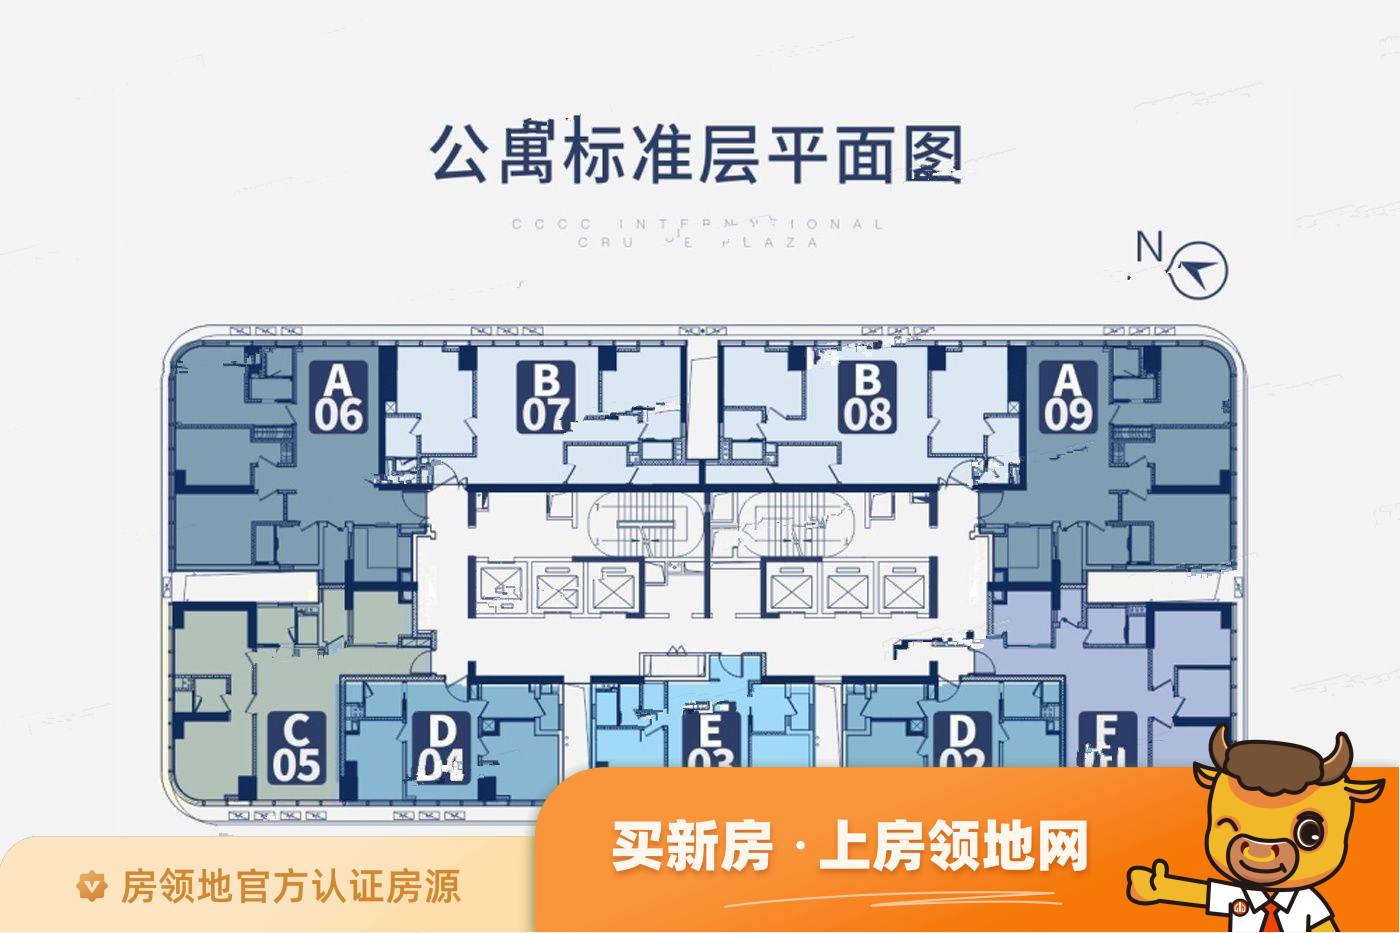 中交国际邮轮广场规划图1